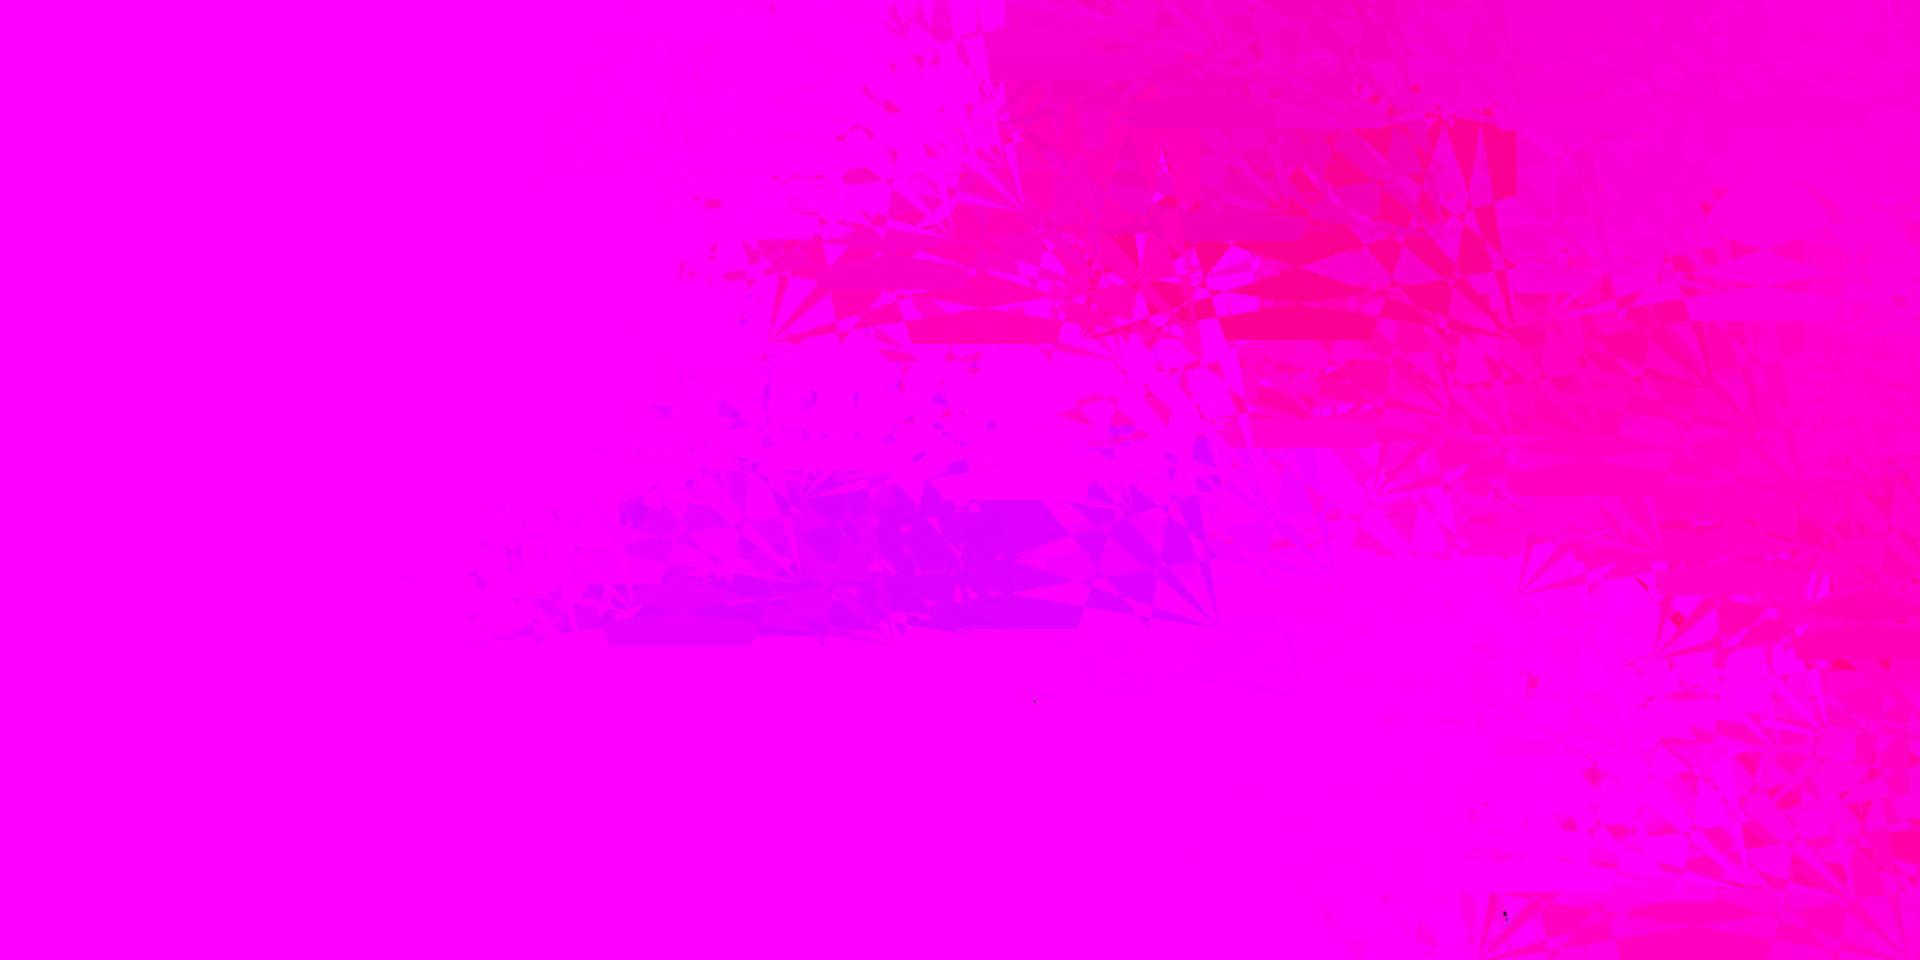 lichtpaars, roze vector sjabloon met driehoekige vormen.